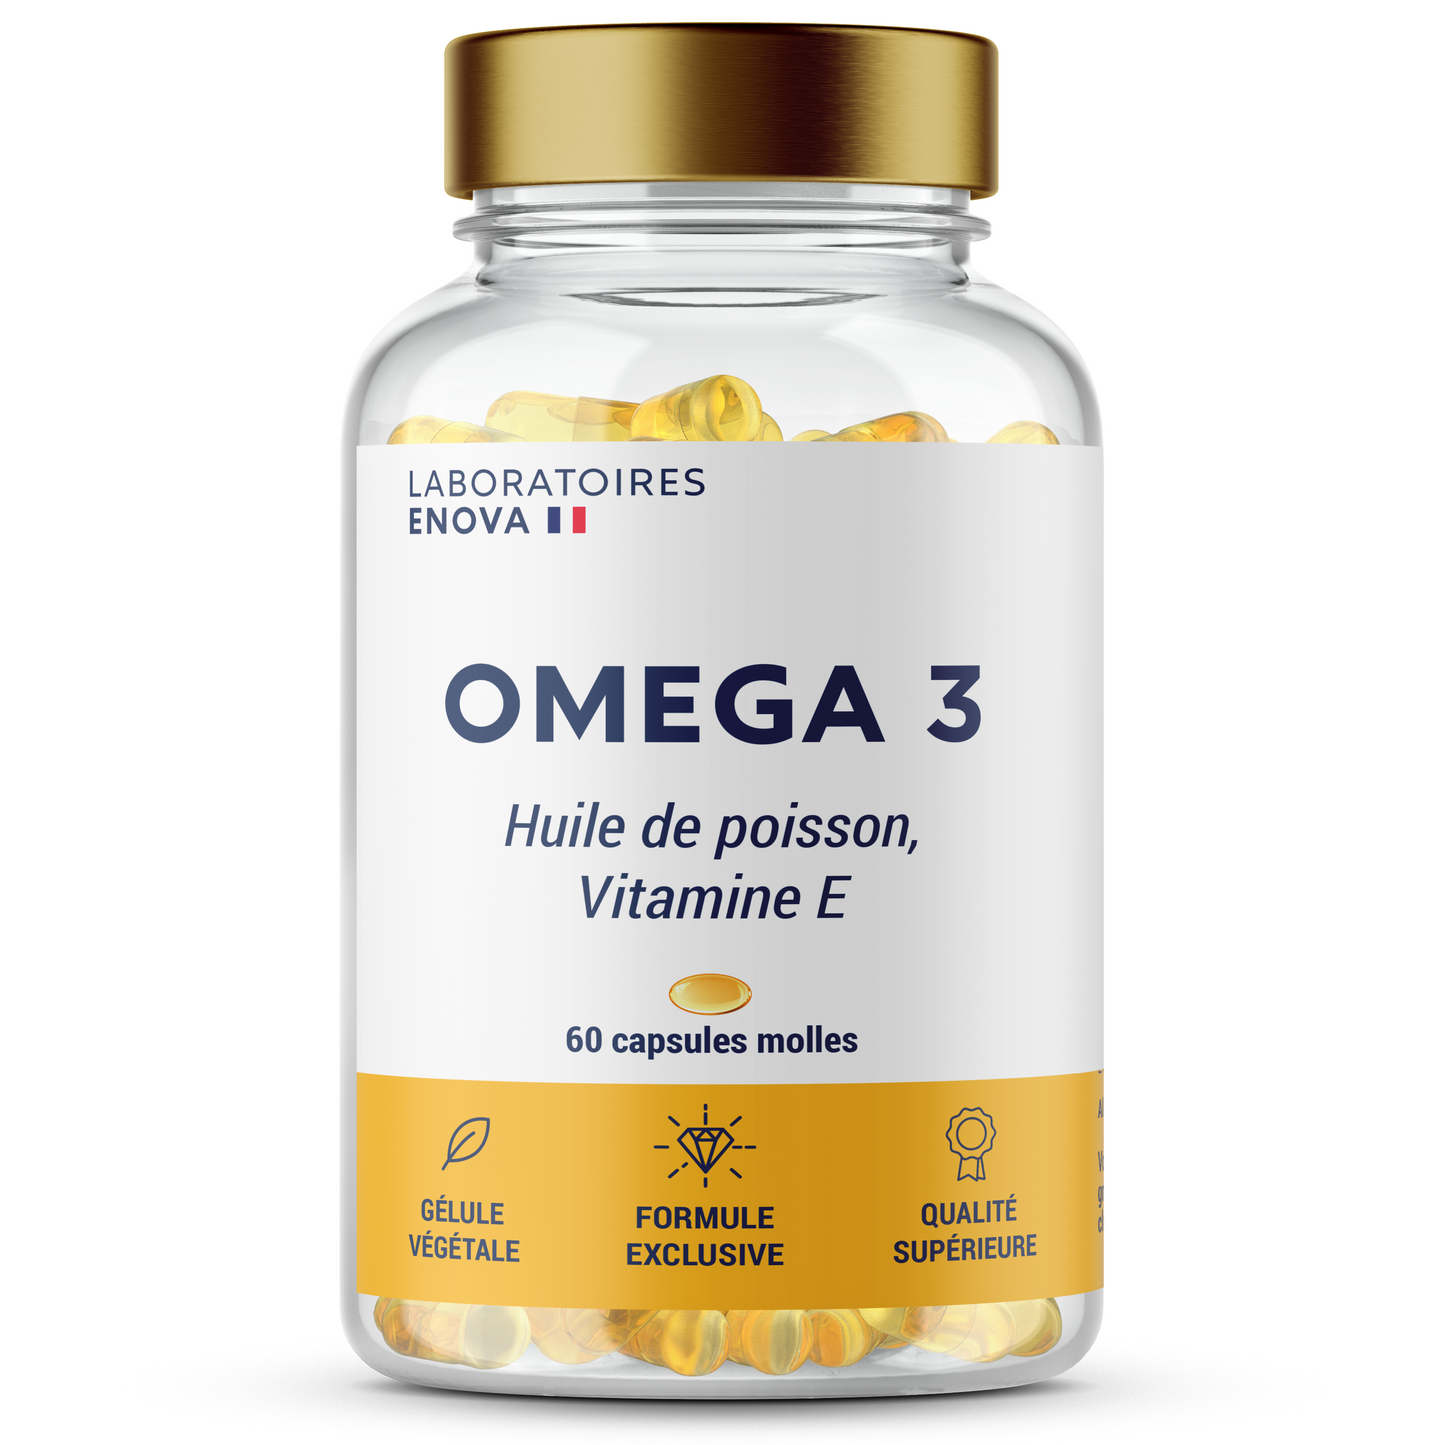 OMEGA 3 - Huile de poisson Ultra concentrée + Vitamine E - Vision, Cerveau, Cœur